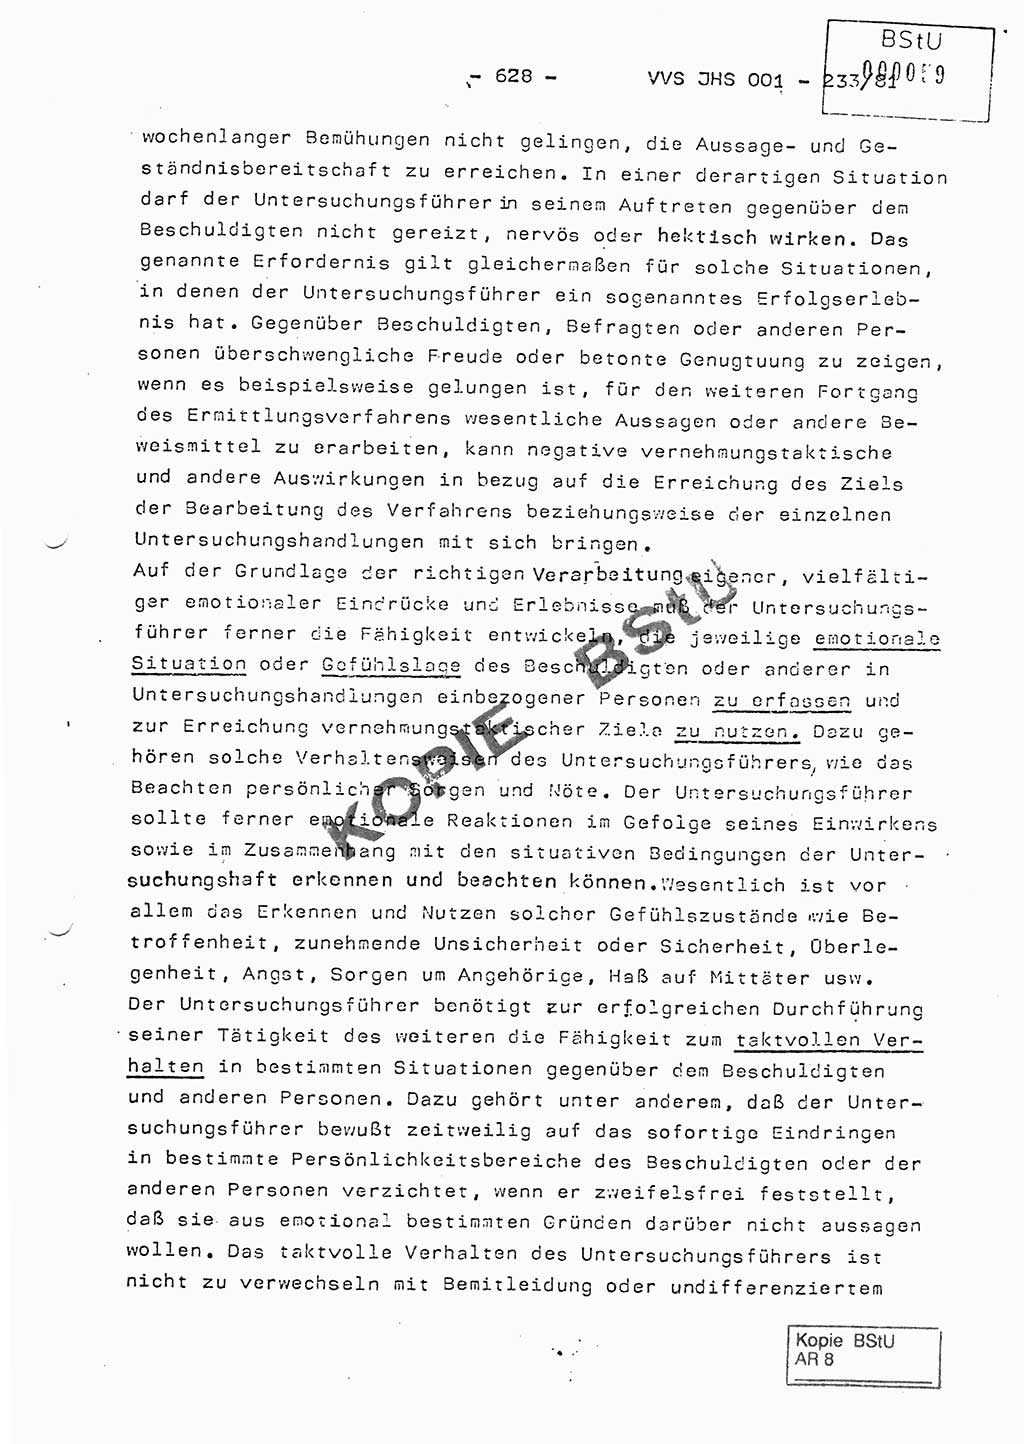 Dissertation Oberstleutnant Horst Zank (JHS), Oberstleutnant Dr. Karl-Heinz Knoblauch (JHS), Oberstleutnant Gustav-Adolf Kowalewski (HA Ⅸ), Oberstleutnant Wolfgang Plötner (HA Ⅸ), Ministerium für Staatssicherheit (MfS) [Deutsche Demokratische Republik (DDR)], Juristische Hochschule (JHS), Vertrauliche Verschlußsache (VVS) o001-233/81, Potsdam 1981, Blatt 628 (Diss. MfS DDR JHS VVS o001-233/81 1981, Bl. 628)